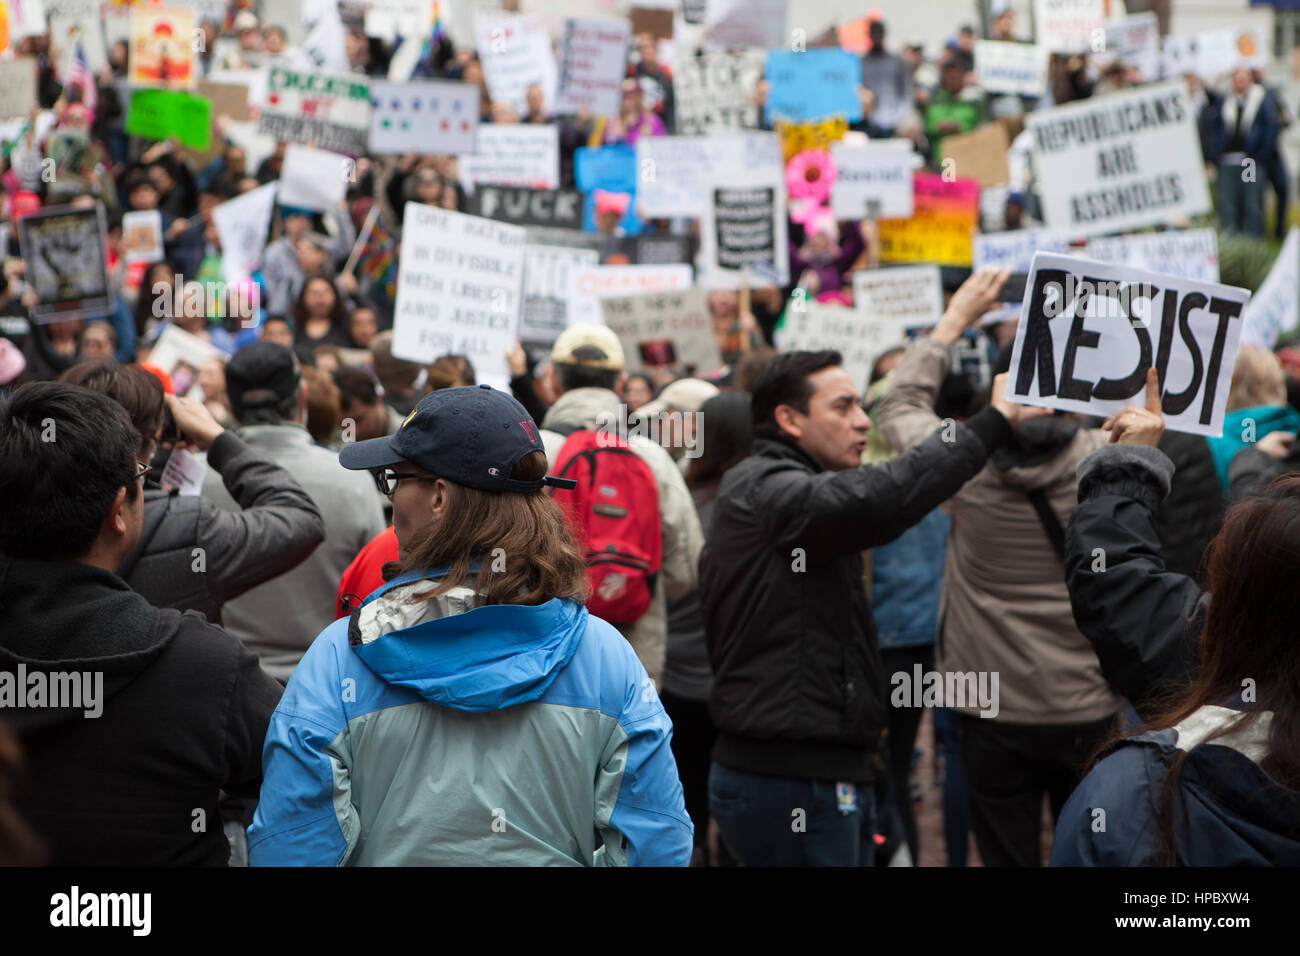 Los Angeles, USA. 20. Februar 2017. Demonstranten versammeln sich am Los Angeles City Hall für "Nicht Presidents Day" Rallye. Zack Clark/Alamay Live-Nachrichten Stockfoto